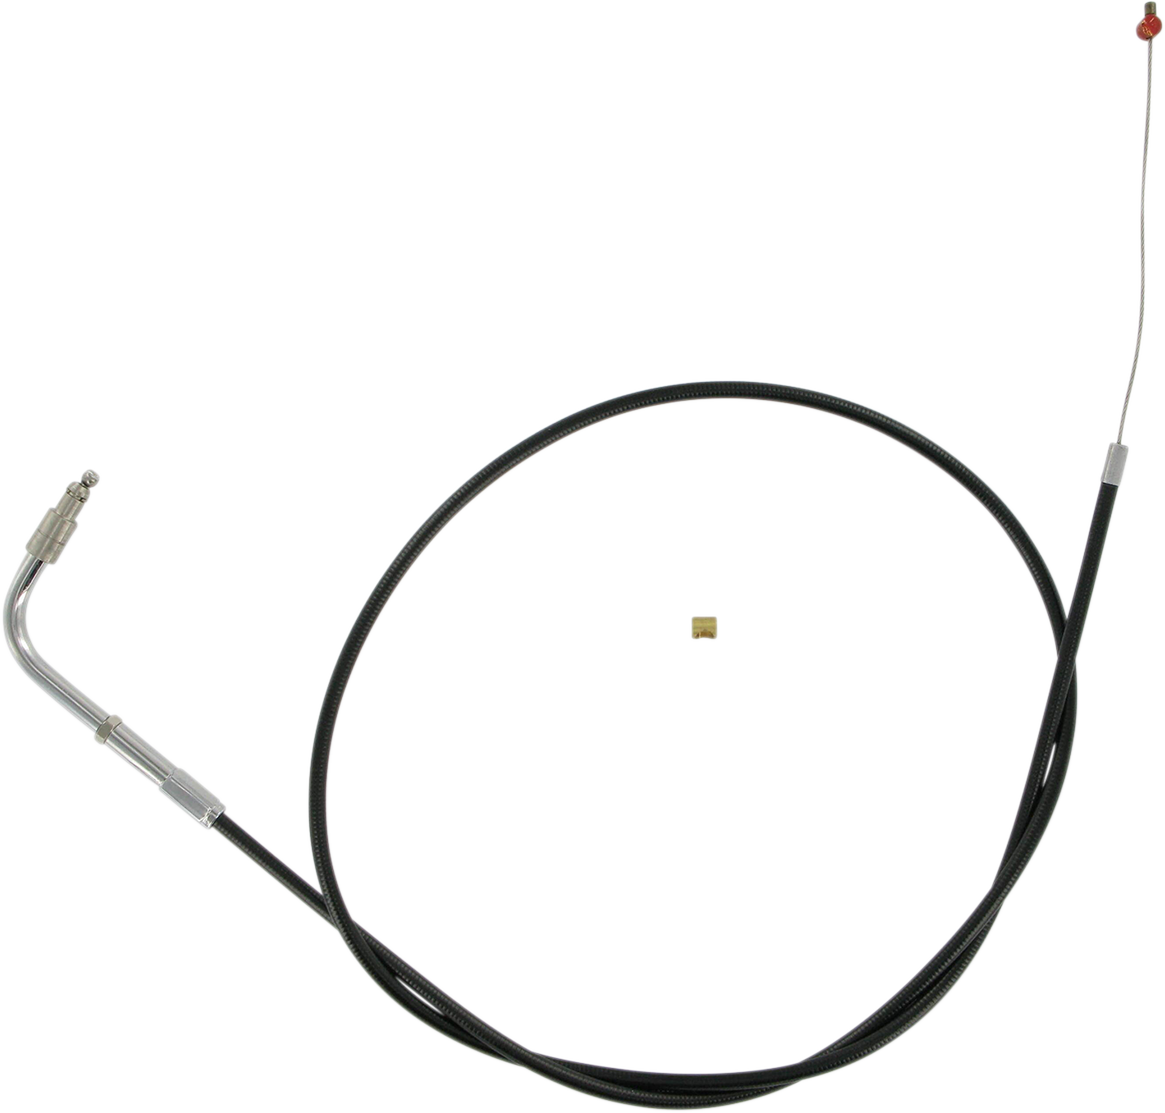 BARNETT Throttle Cable - +6" - Black 101-30-30020-06